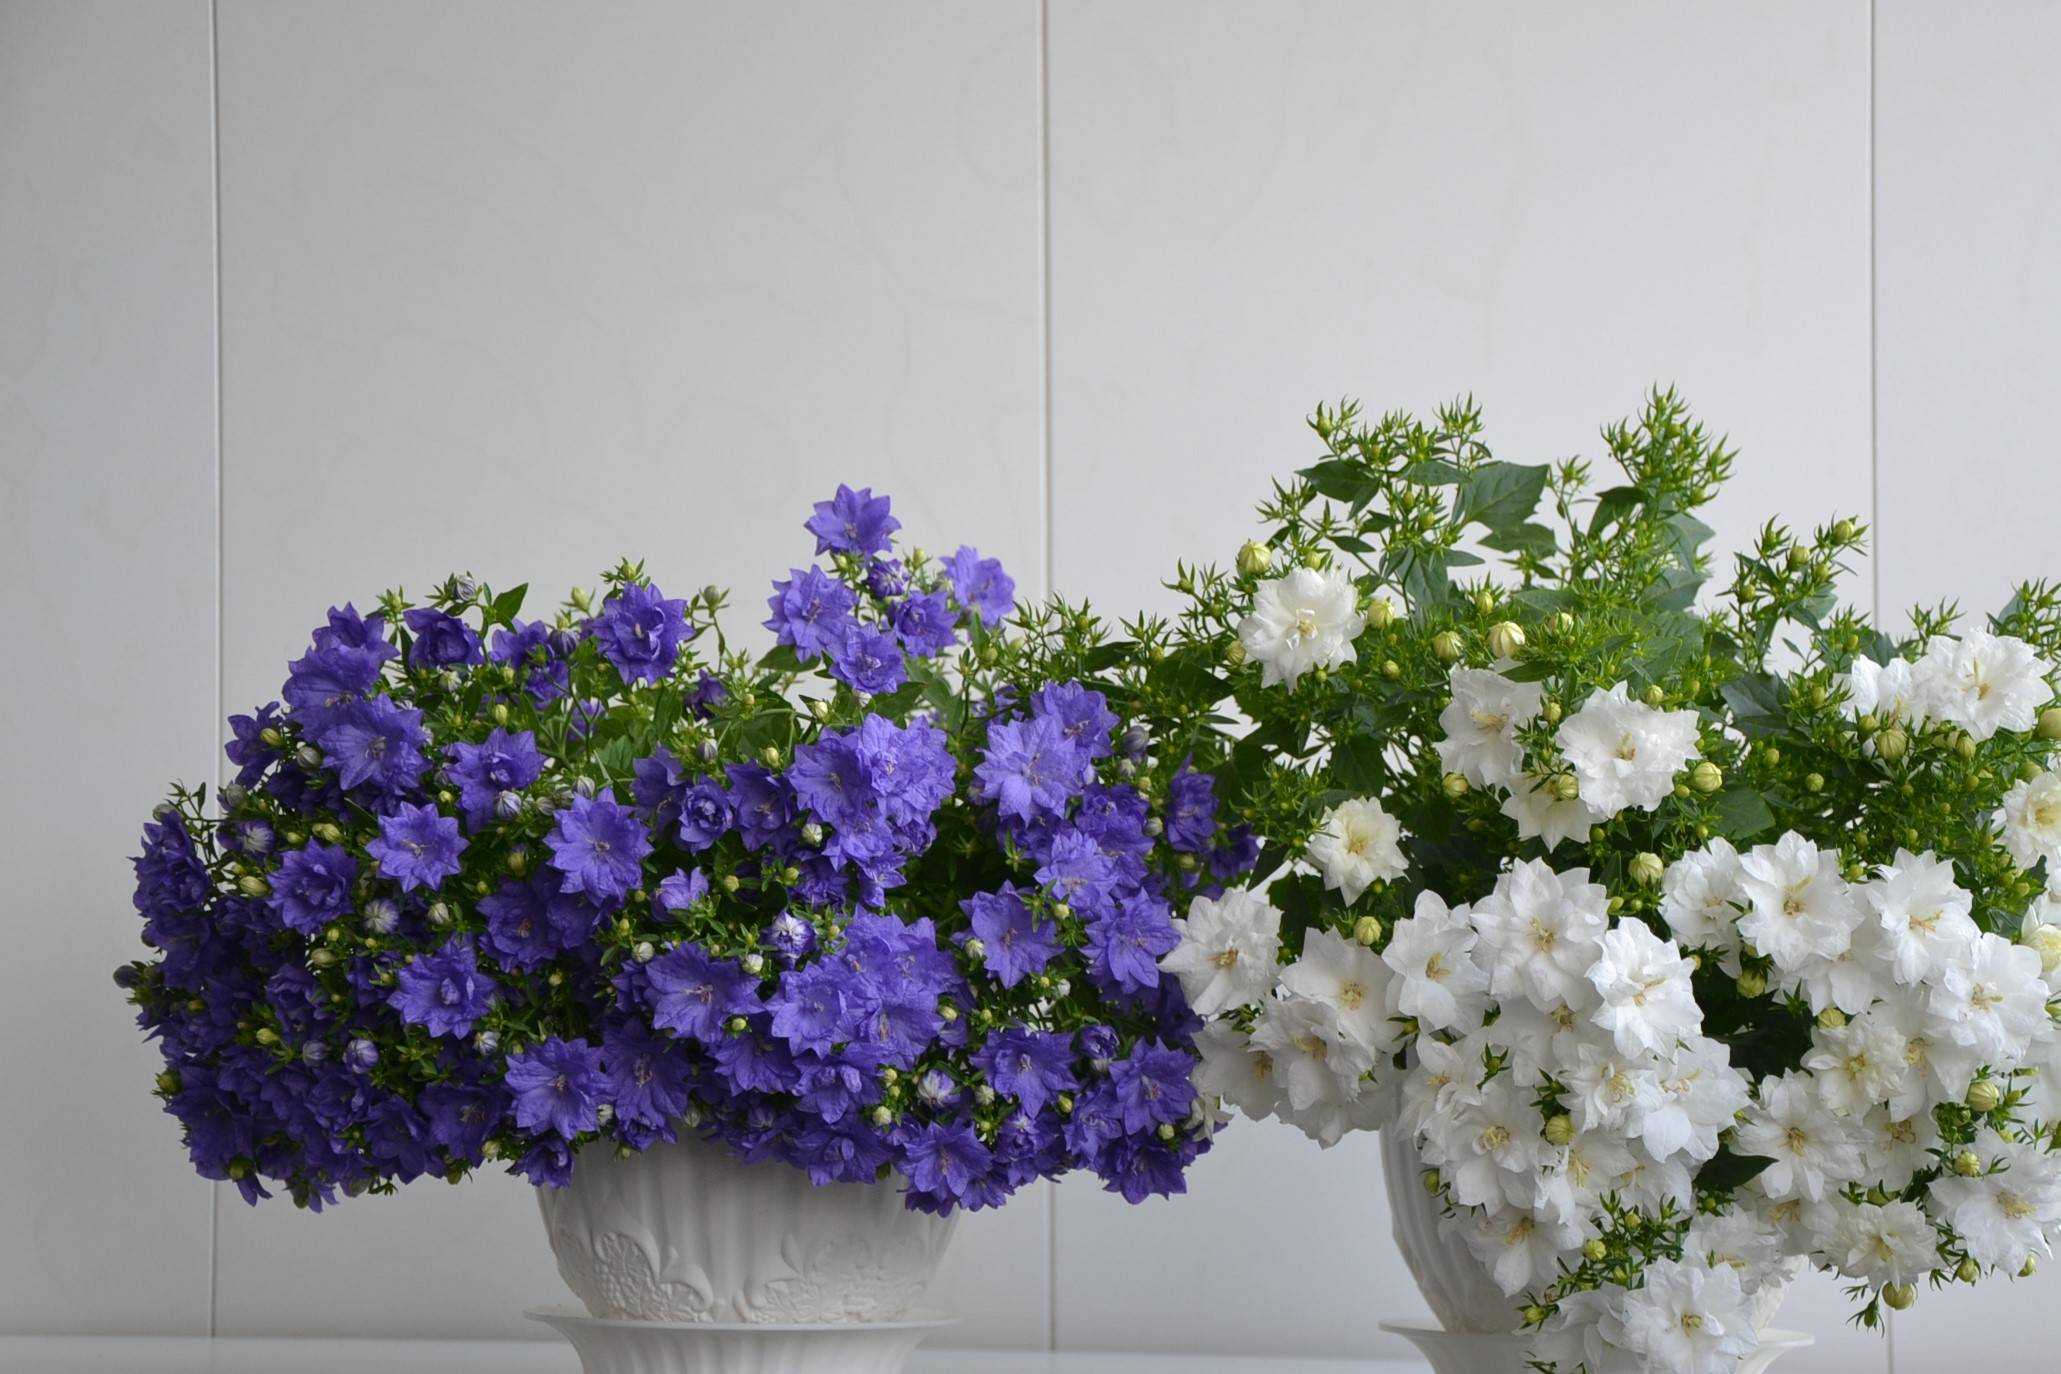 Цветущие красивые комнатные цветы (с фото) - проект "цветочки" - для цветоводов начинающих и профессионалов